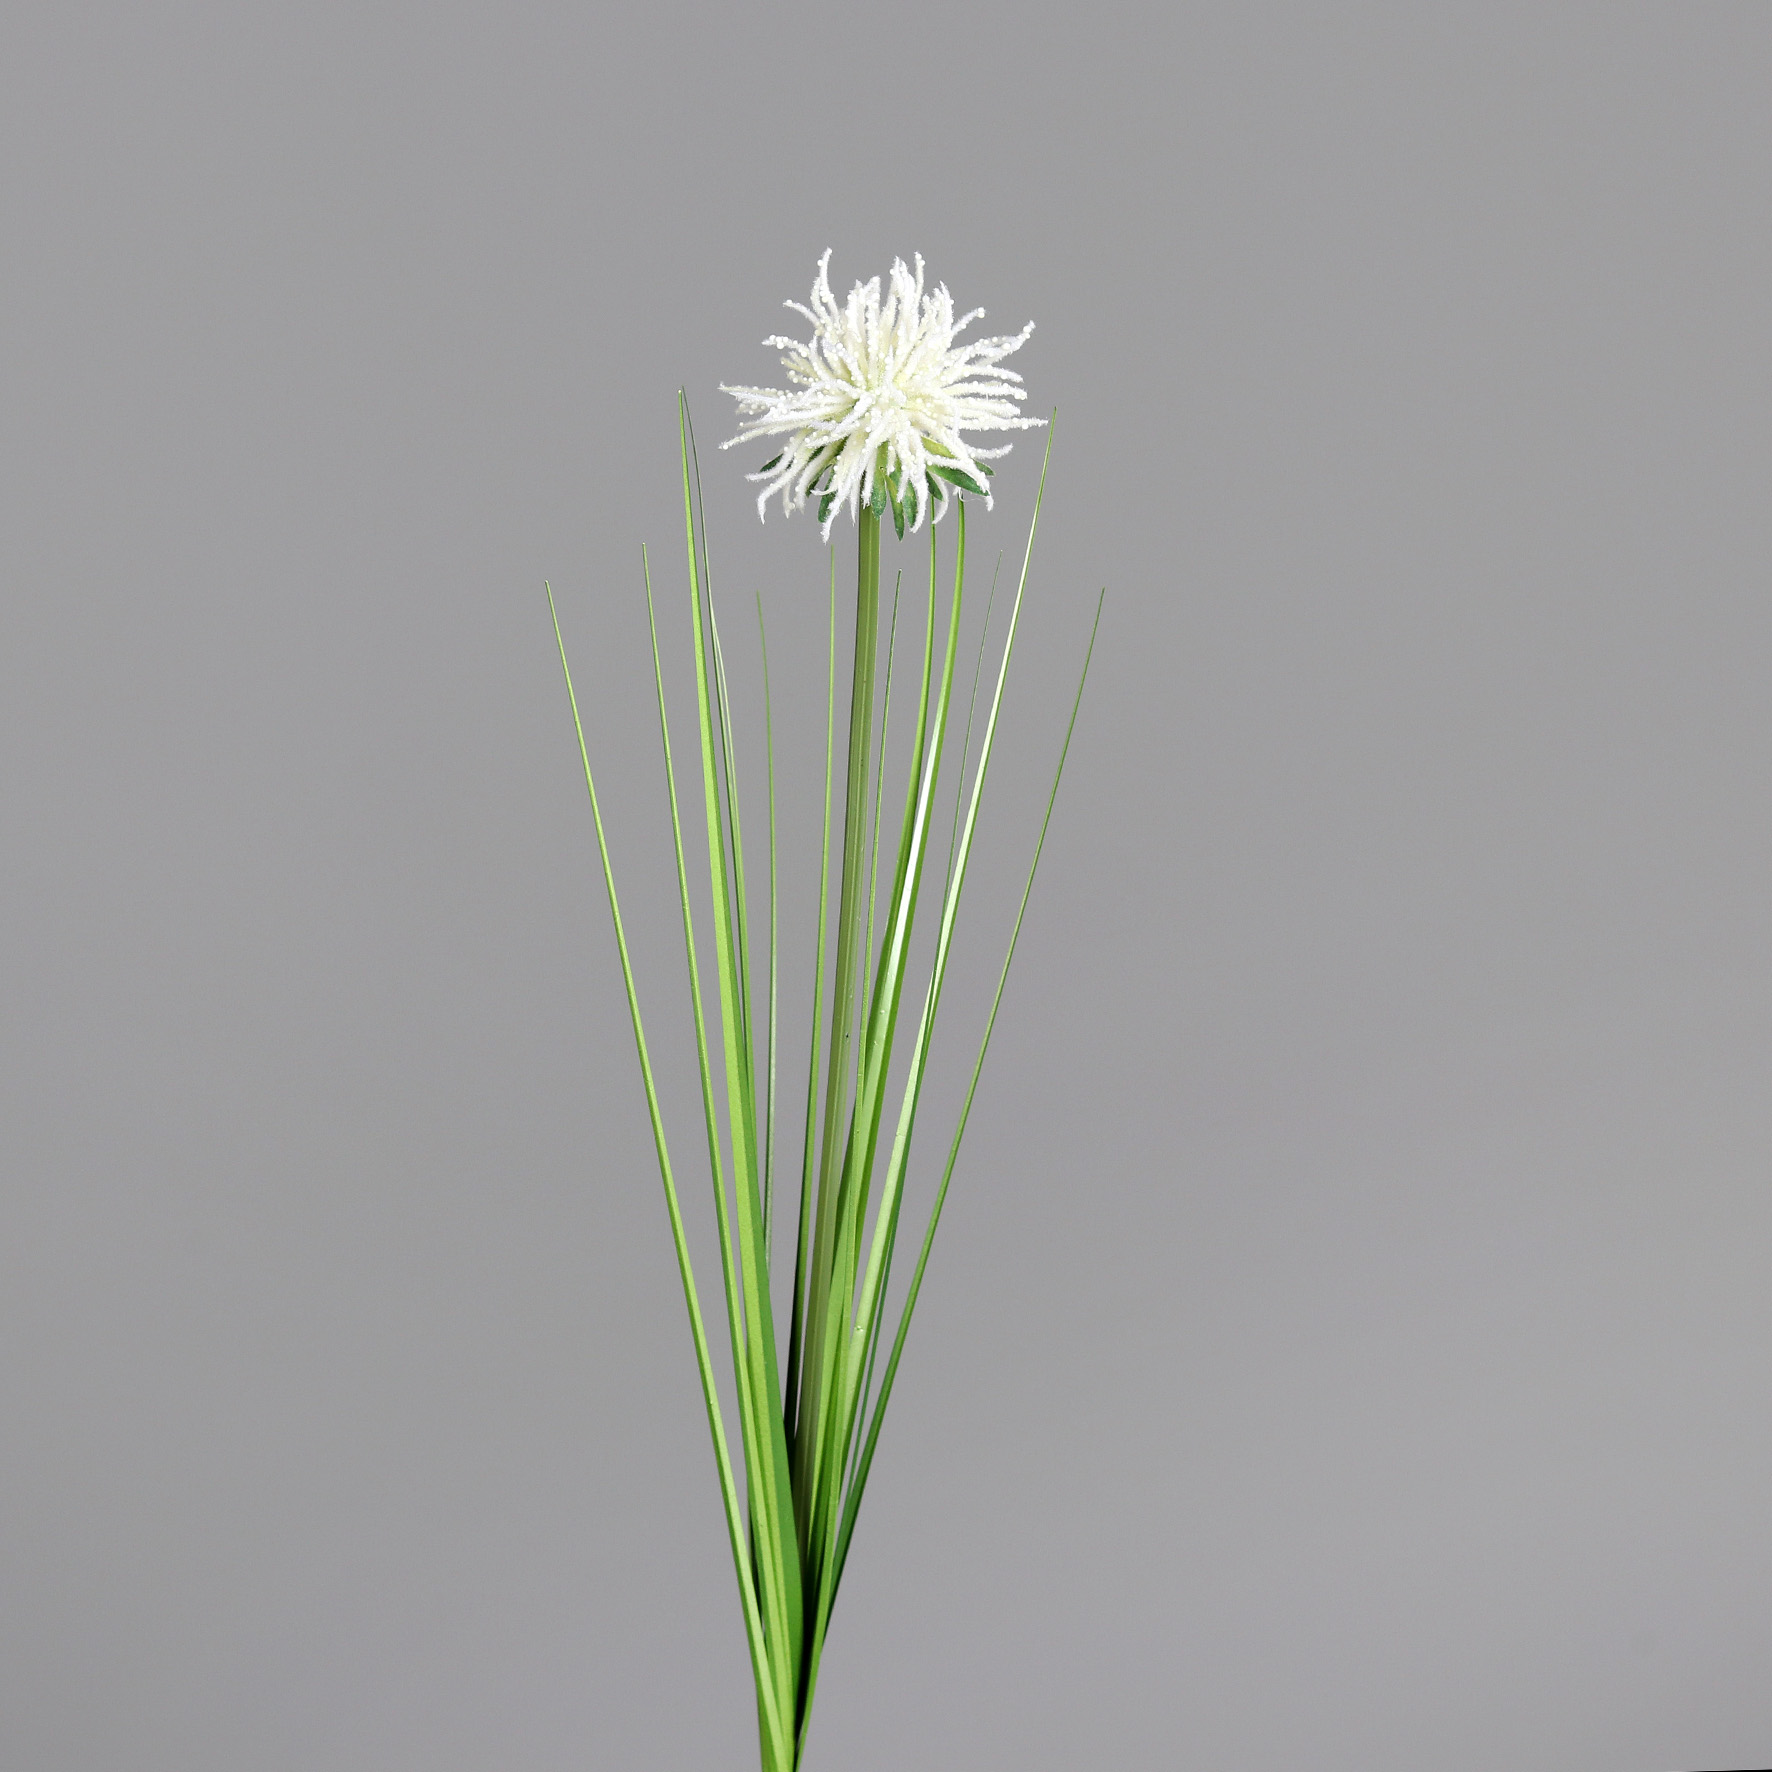 Alliumblüte mit Gras 78cm weiß DP Kunstblumen künstliche Blumen Allium